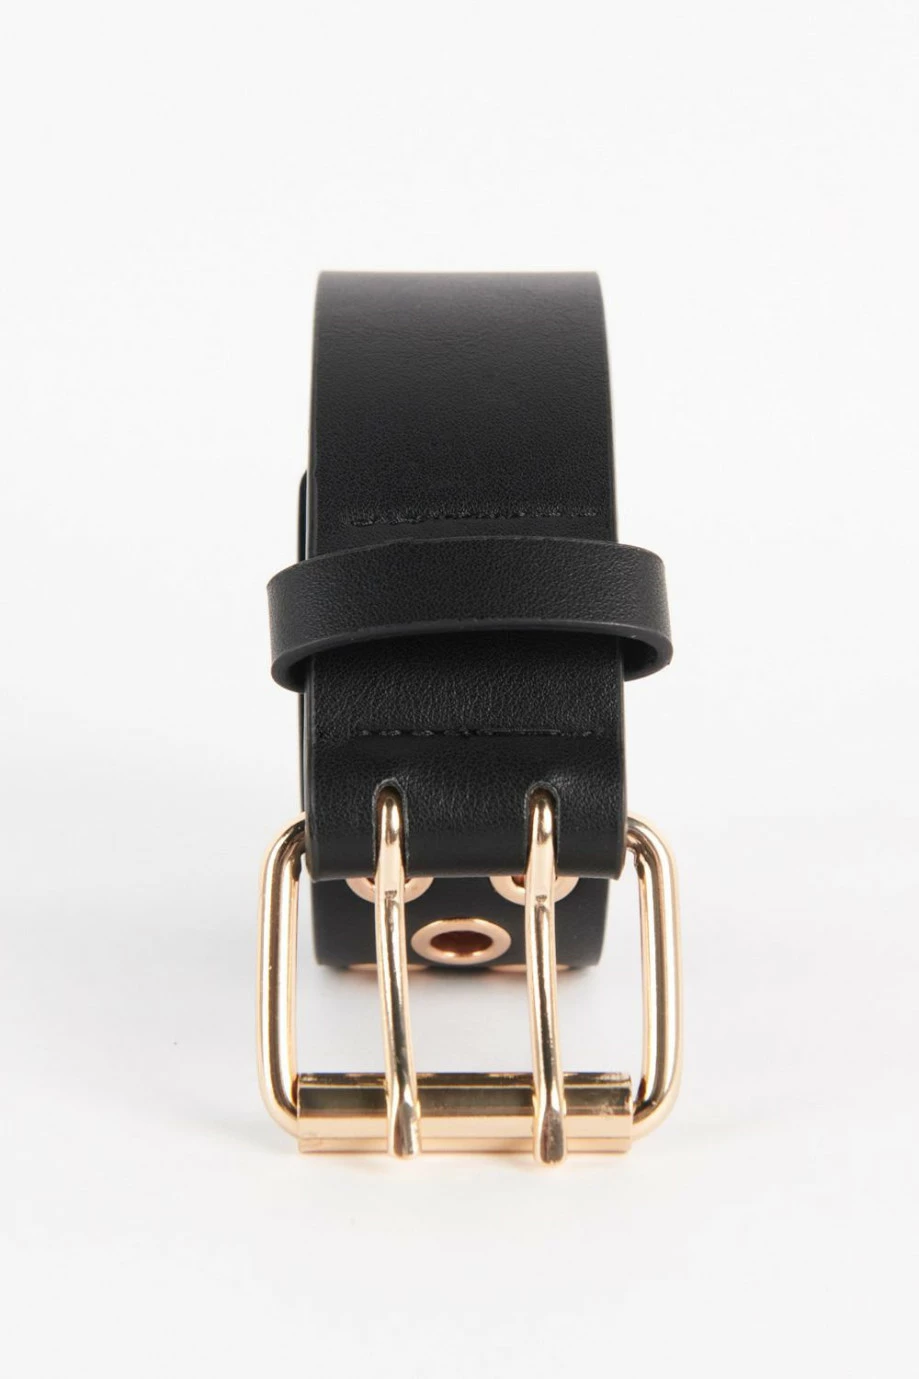 Cinturón sintético negro con hebilla cuadrada y ojaletes metálicos